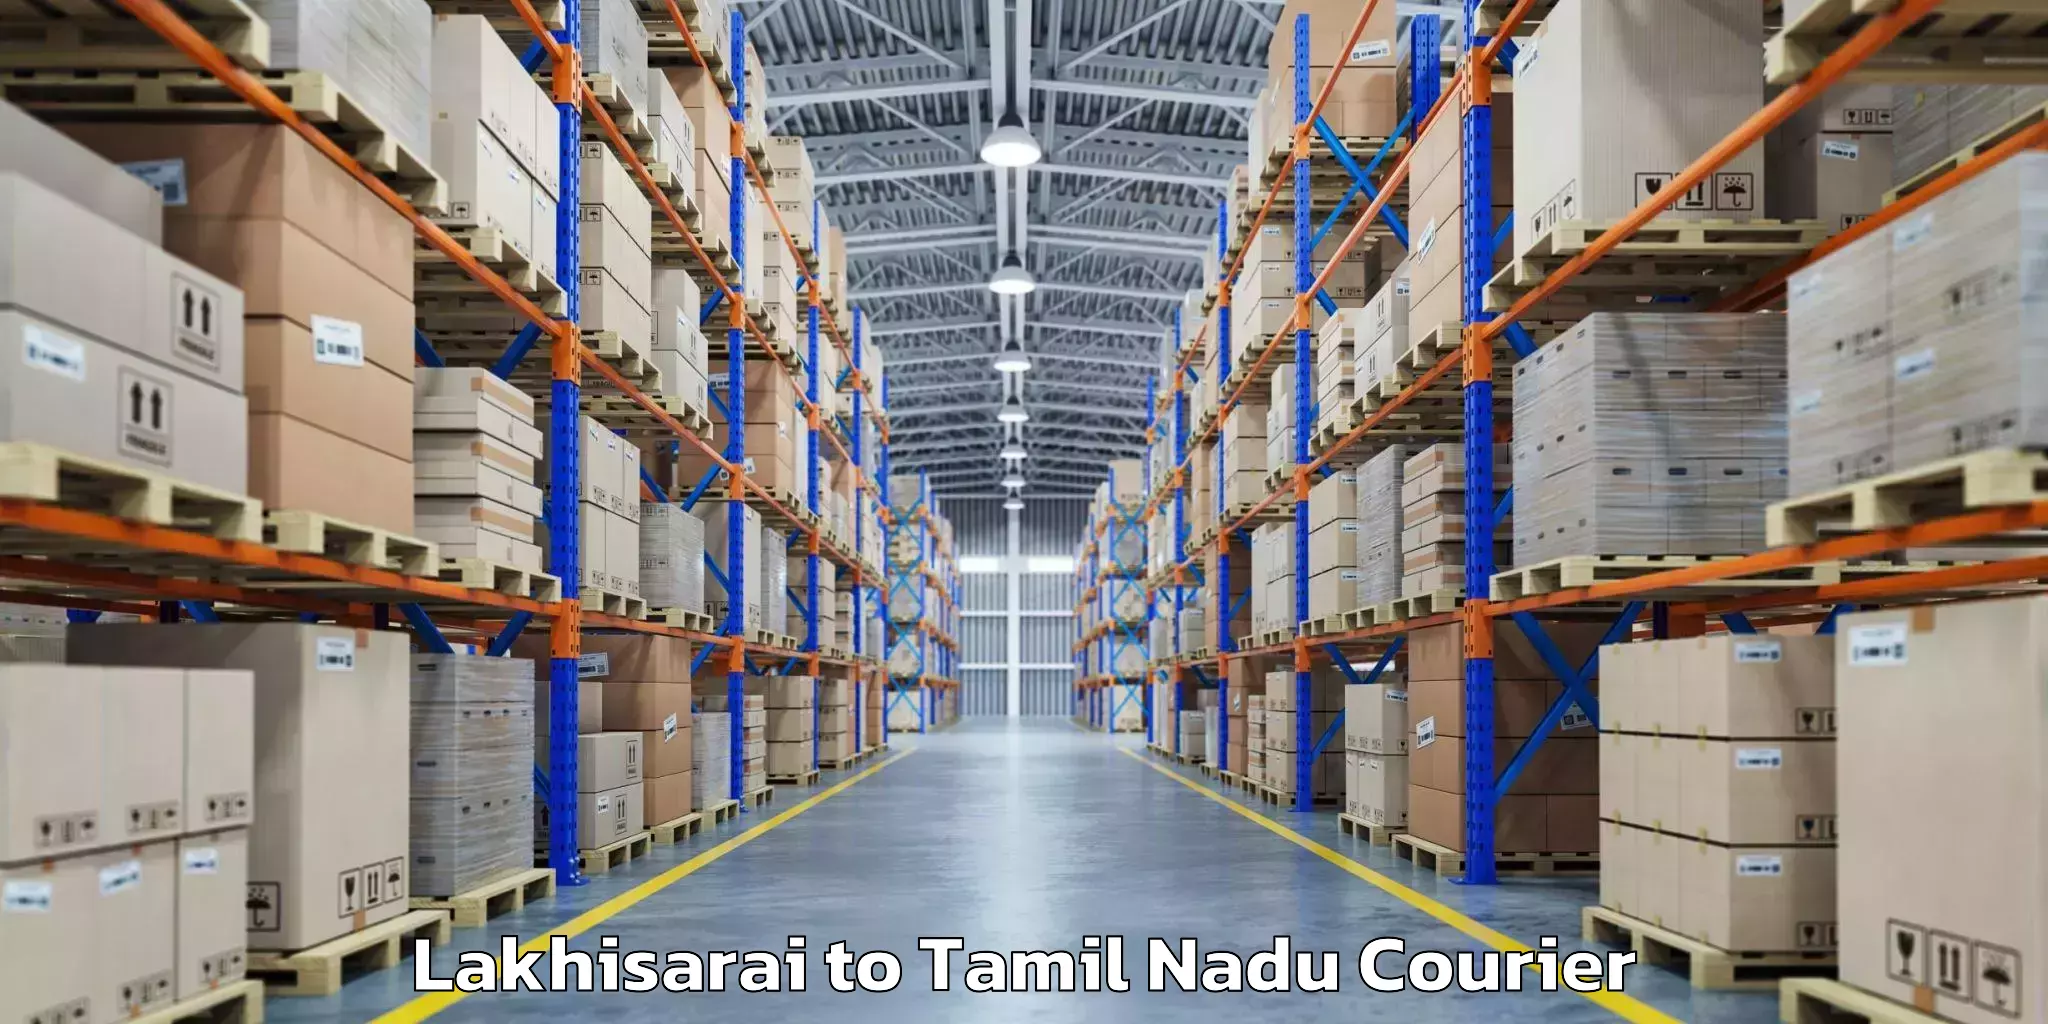 Baggage transport quote Lakhisarai to Tamil Nadu